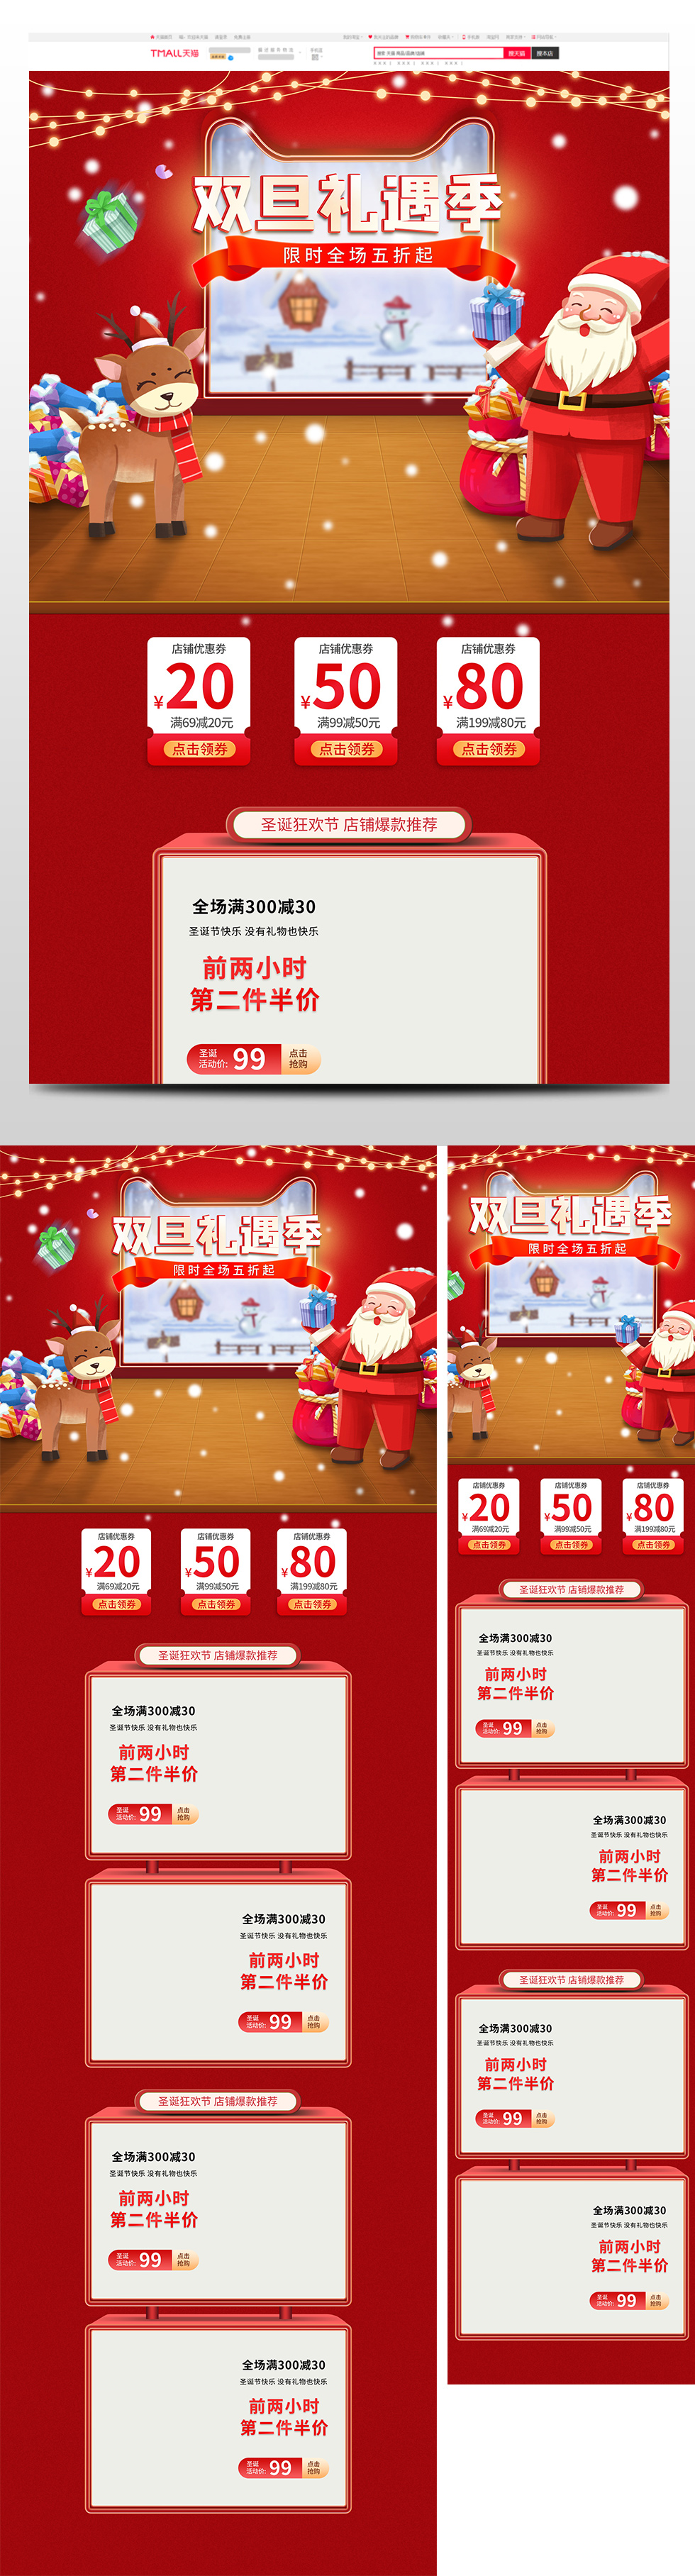 喜庆双旦礼遇季圣诞节元旦节促销天猫首页电商圣诞节首页 70.JPG